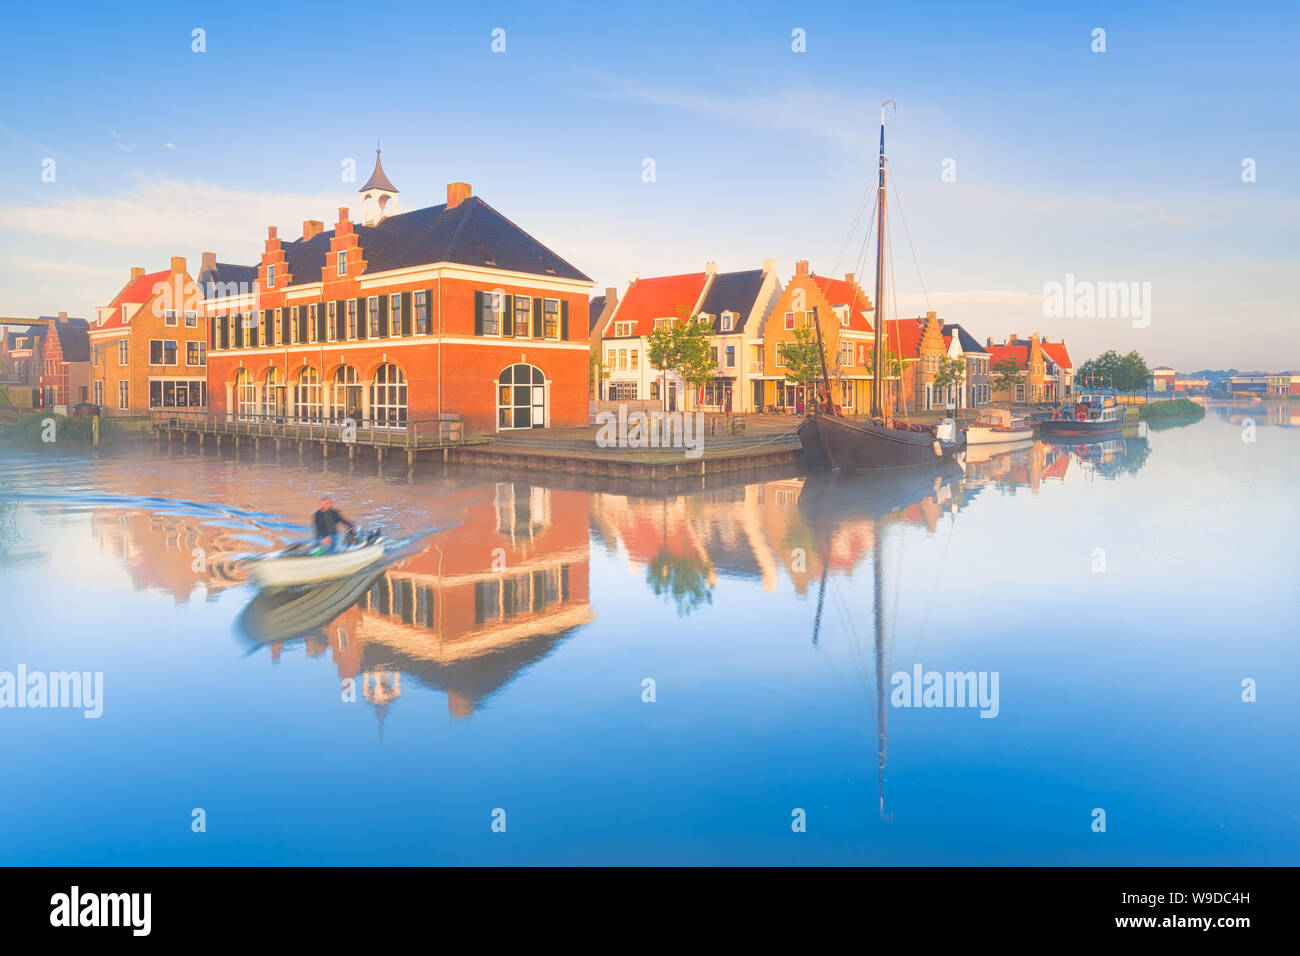 Traditionelle niederländische Häuser mit einem Kanal und Boote auf einem nebligen Pring morgen mit einem blauen Himmel und leuchtenden Farben - die Niederlande - Reise Bild Stockfoto